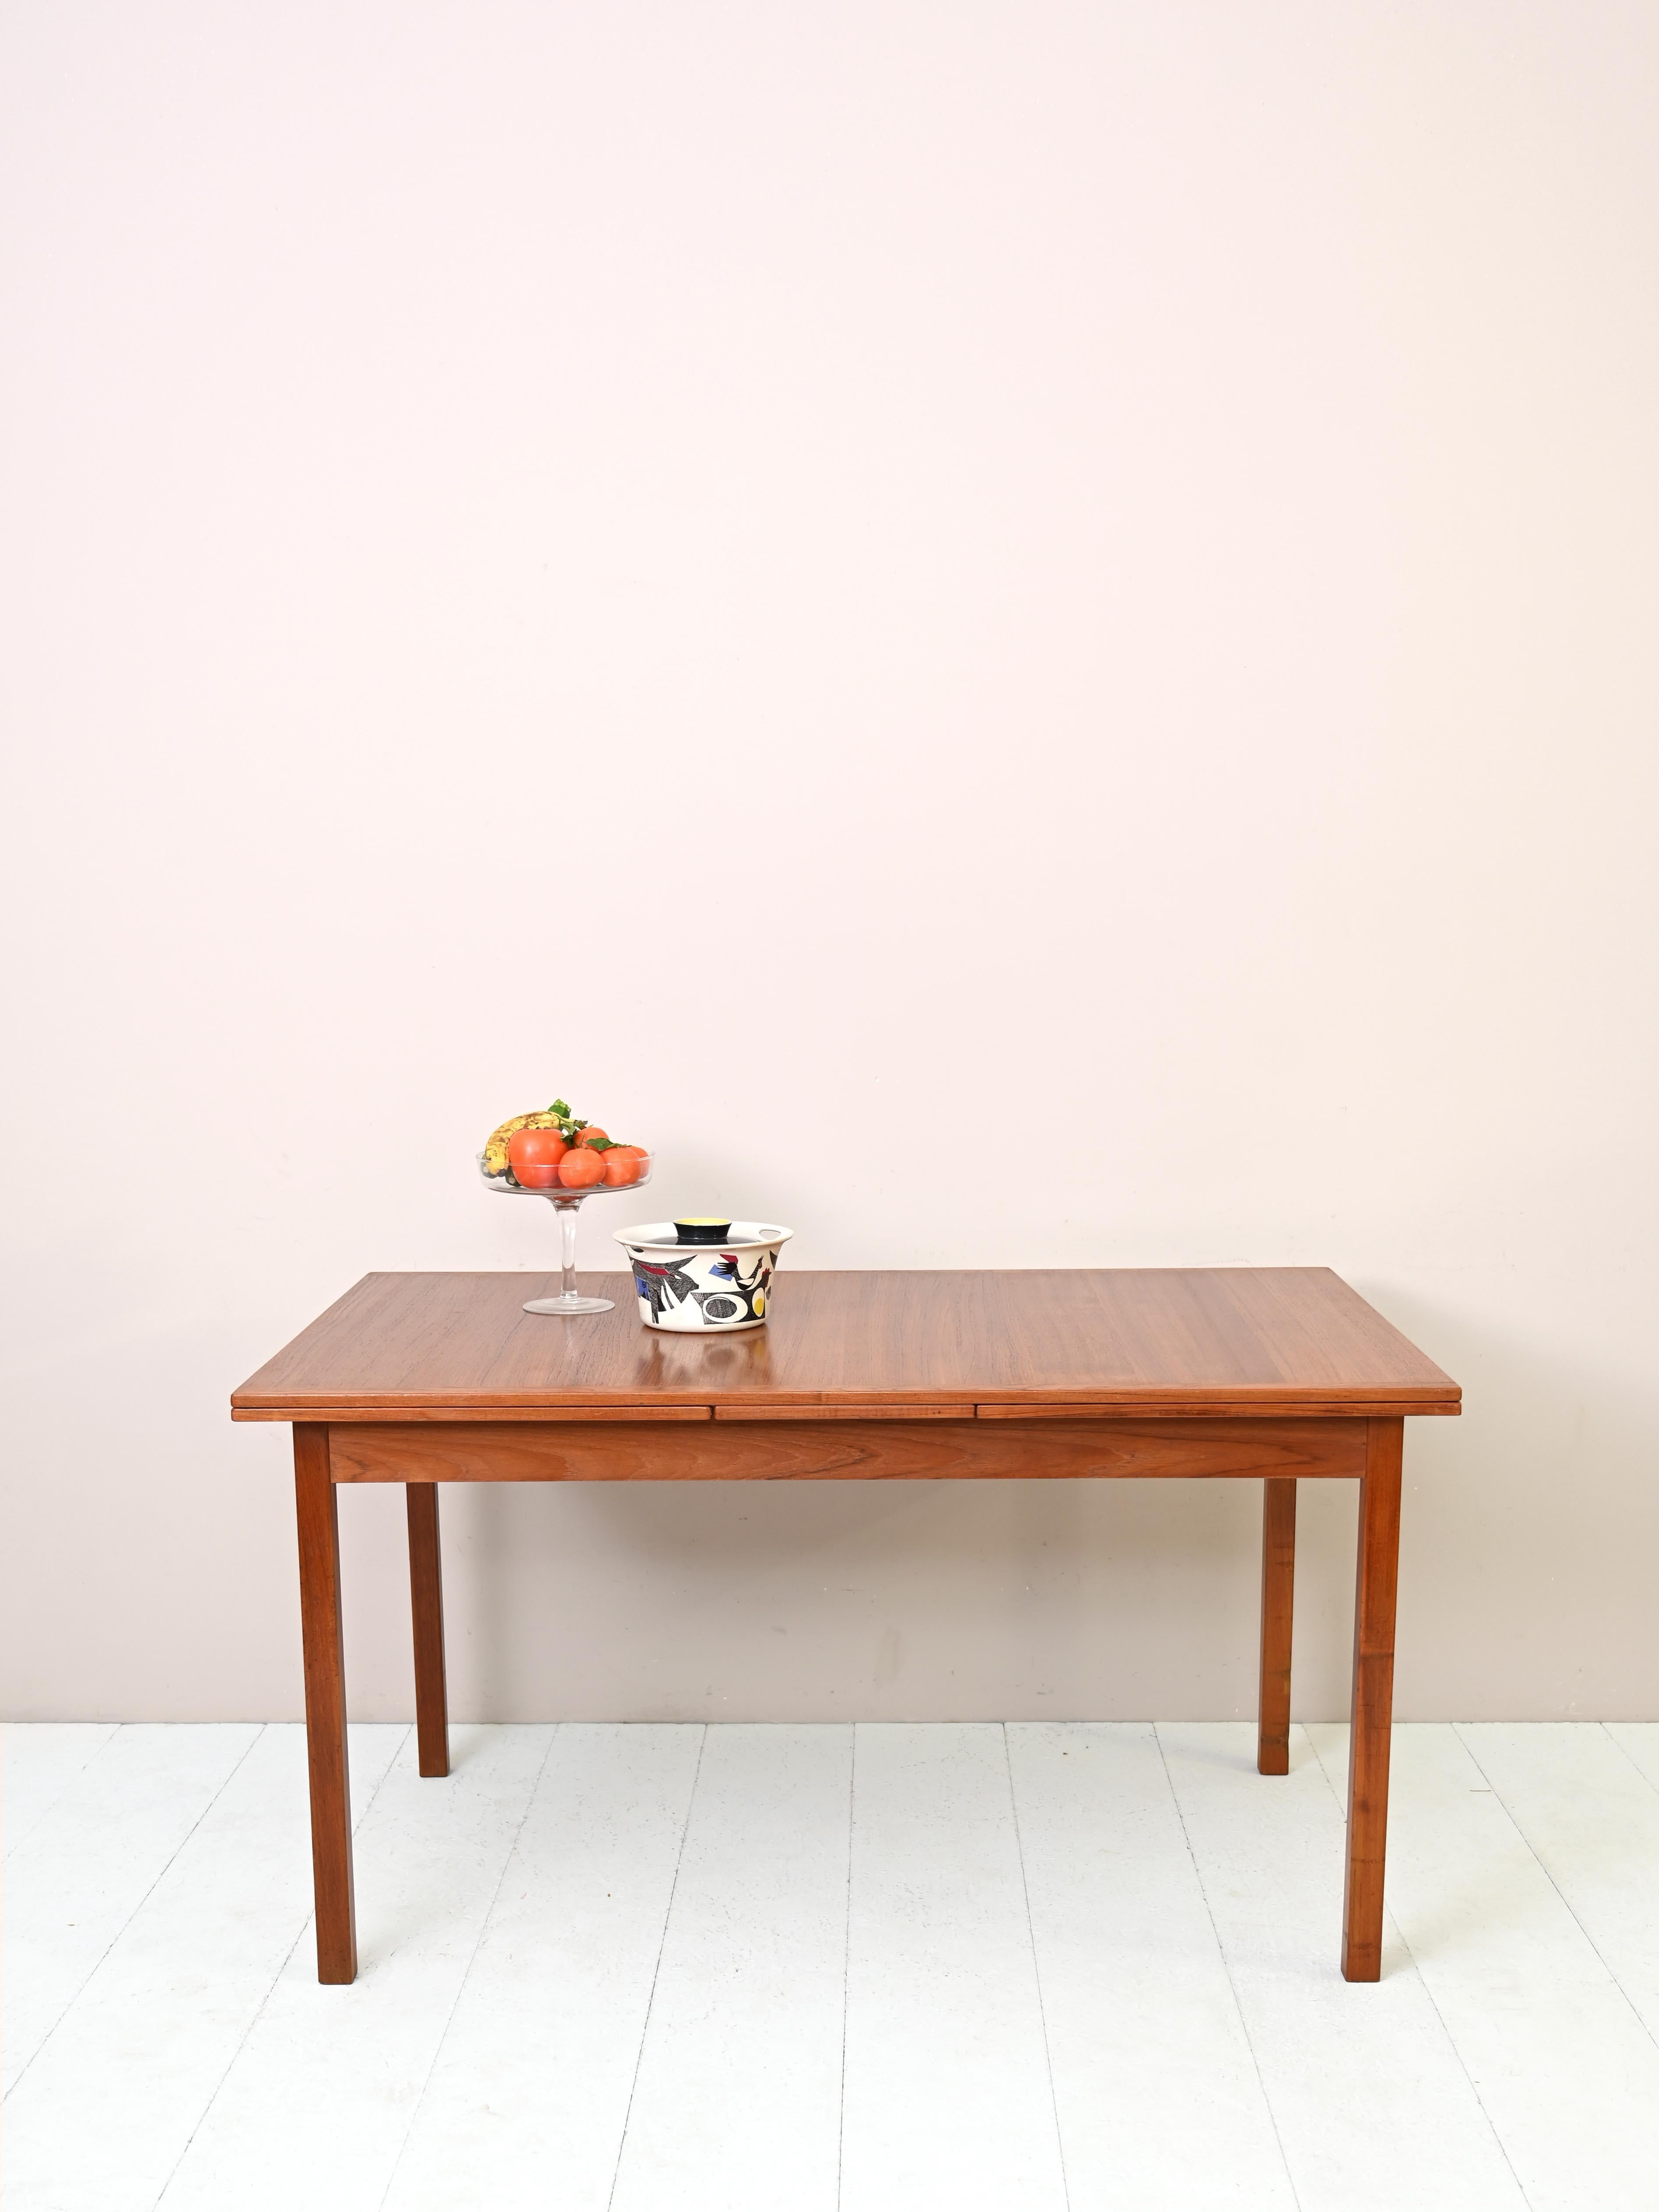 Table de salle à manger scandinave en teck des années 1960.
 
DIMENSIONS DES PLANCHES : 2 X 55cm

Un meuble au design nordique avec des lignes régulières et carrées. Il peut être étendu grâce aux deux planches latérales rétractables qui peuvent être